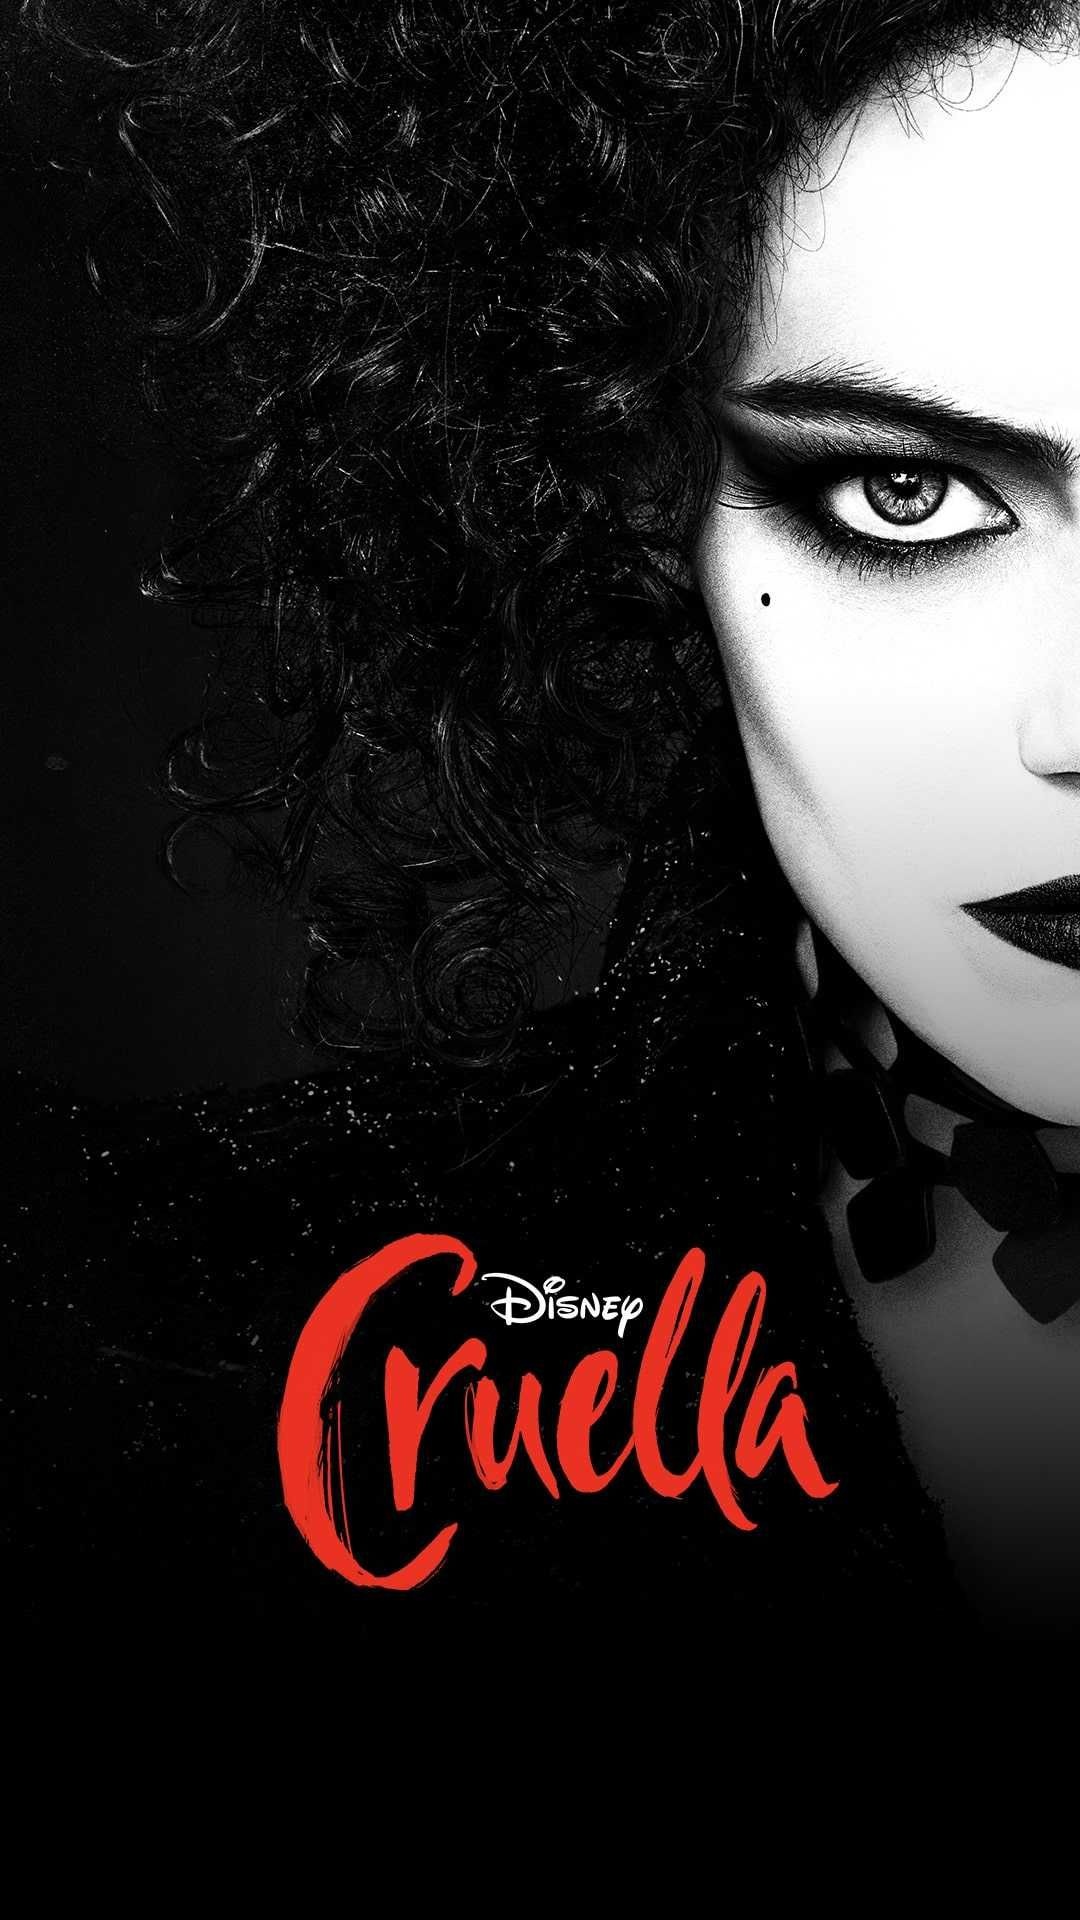 Cruella, Emma Stone, 101 Dalmatians, Disney films, 1080x1920 Full HD Phone